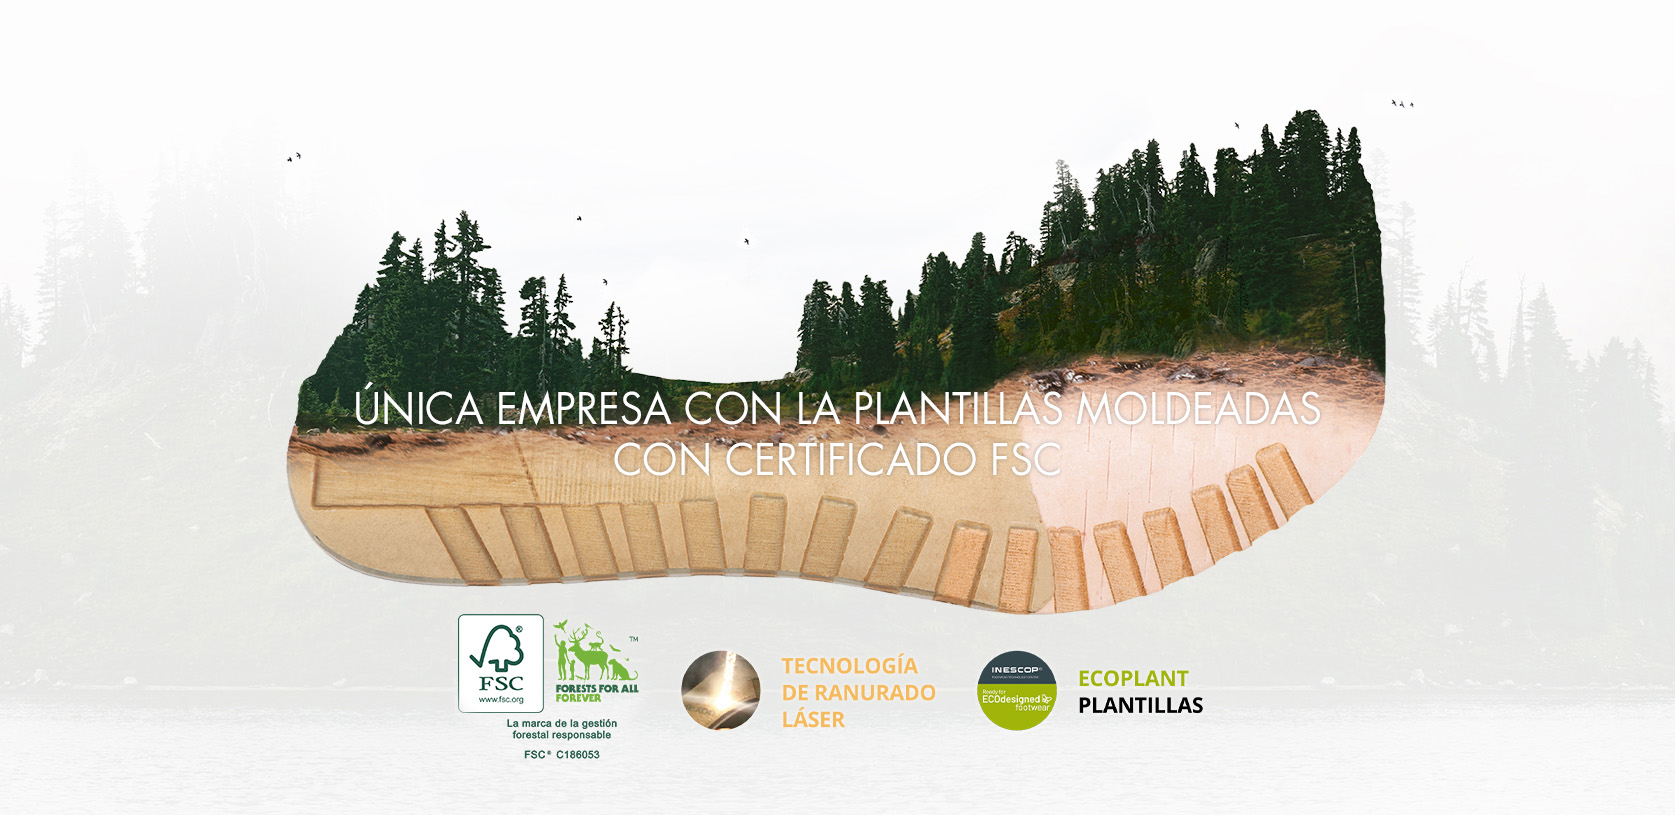 Plantillas Hernández: Las plantillas con certificación FSC